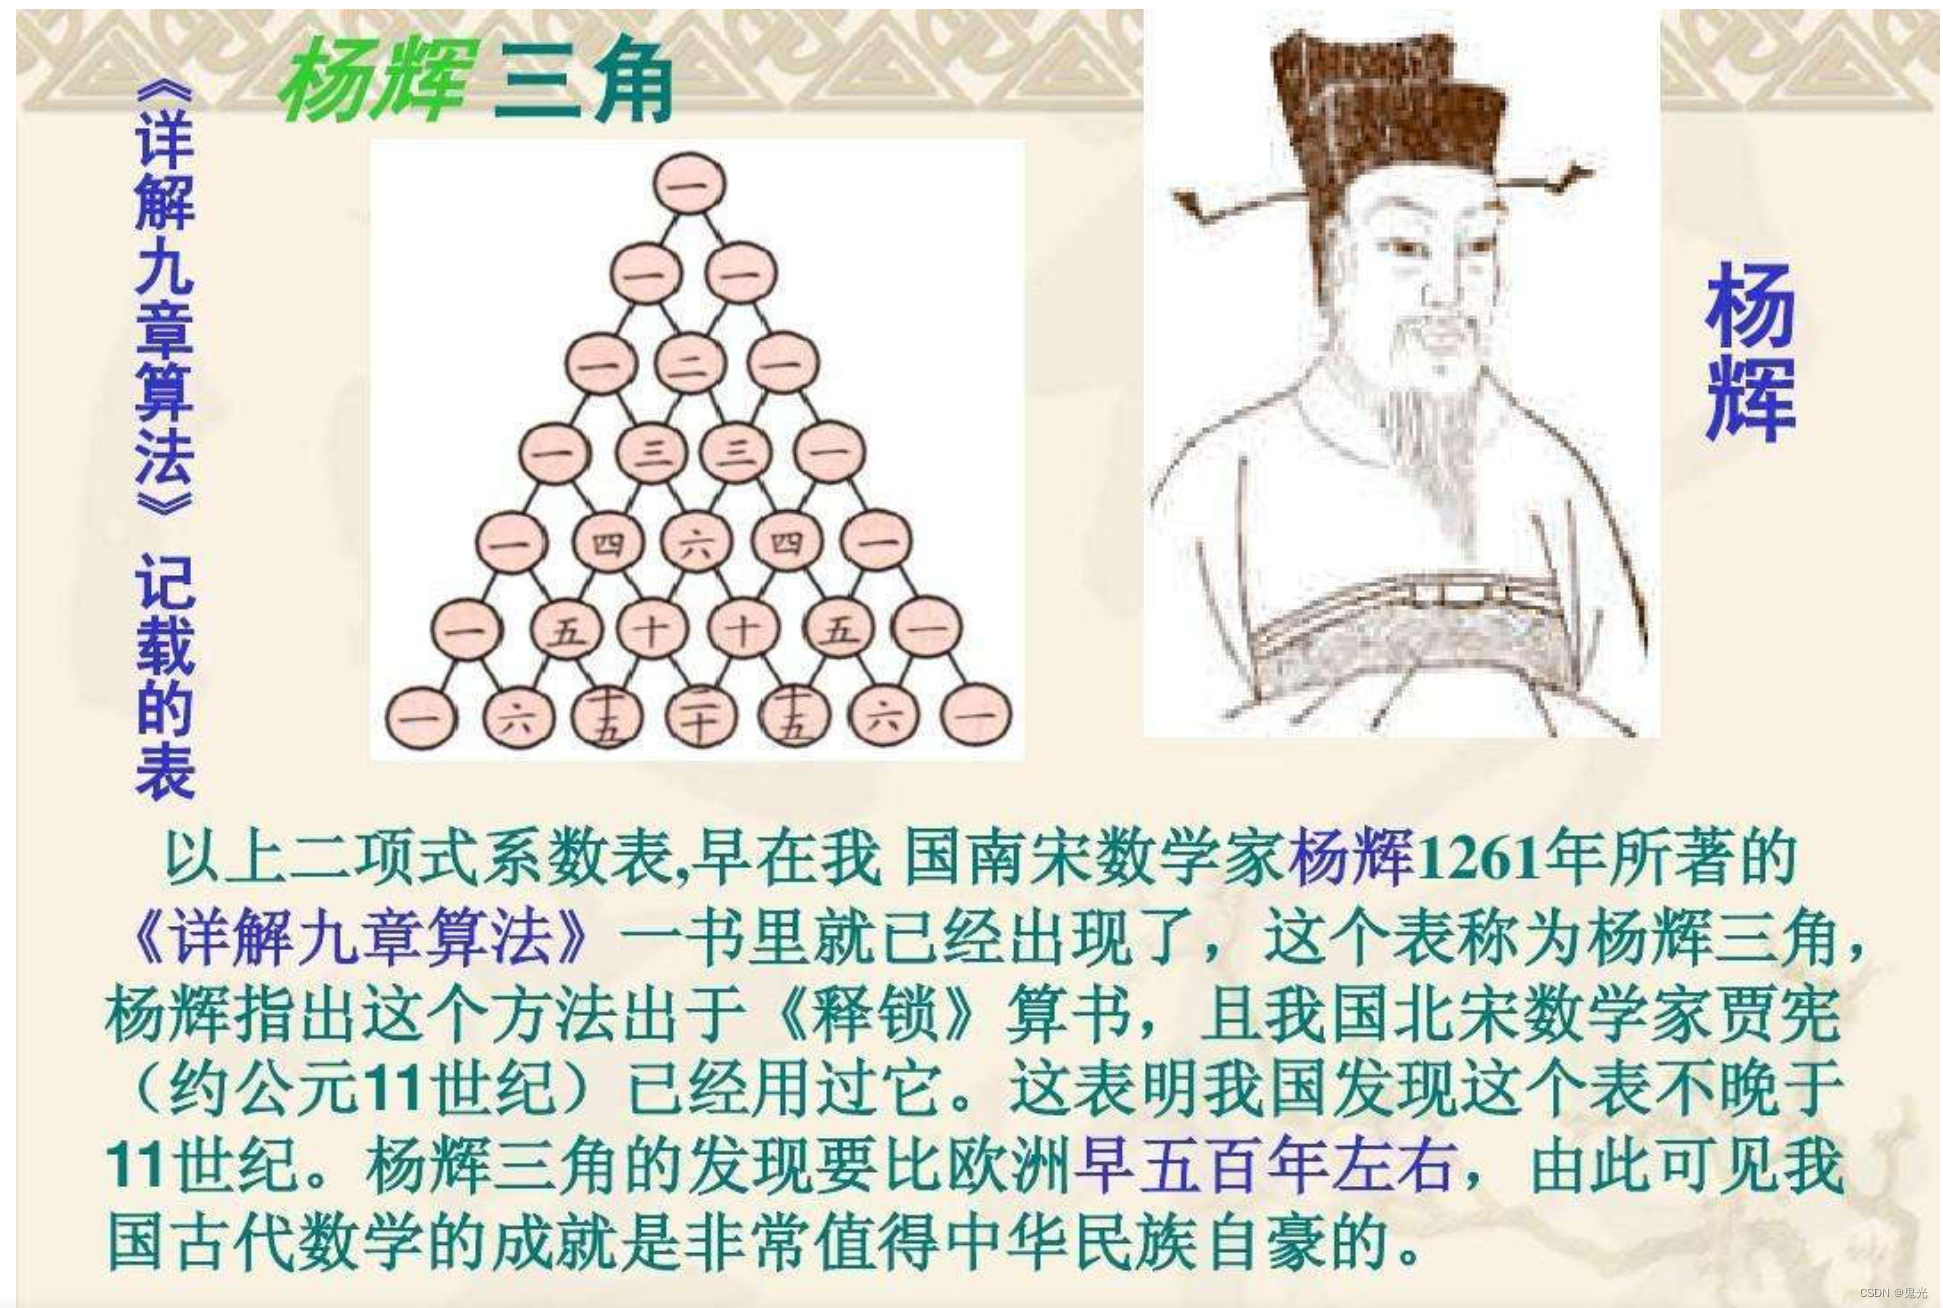 古代数学家杨辉三角图片